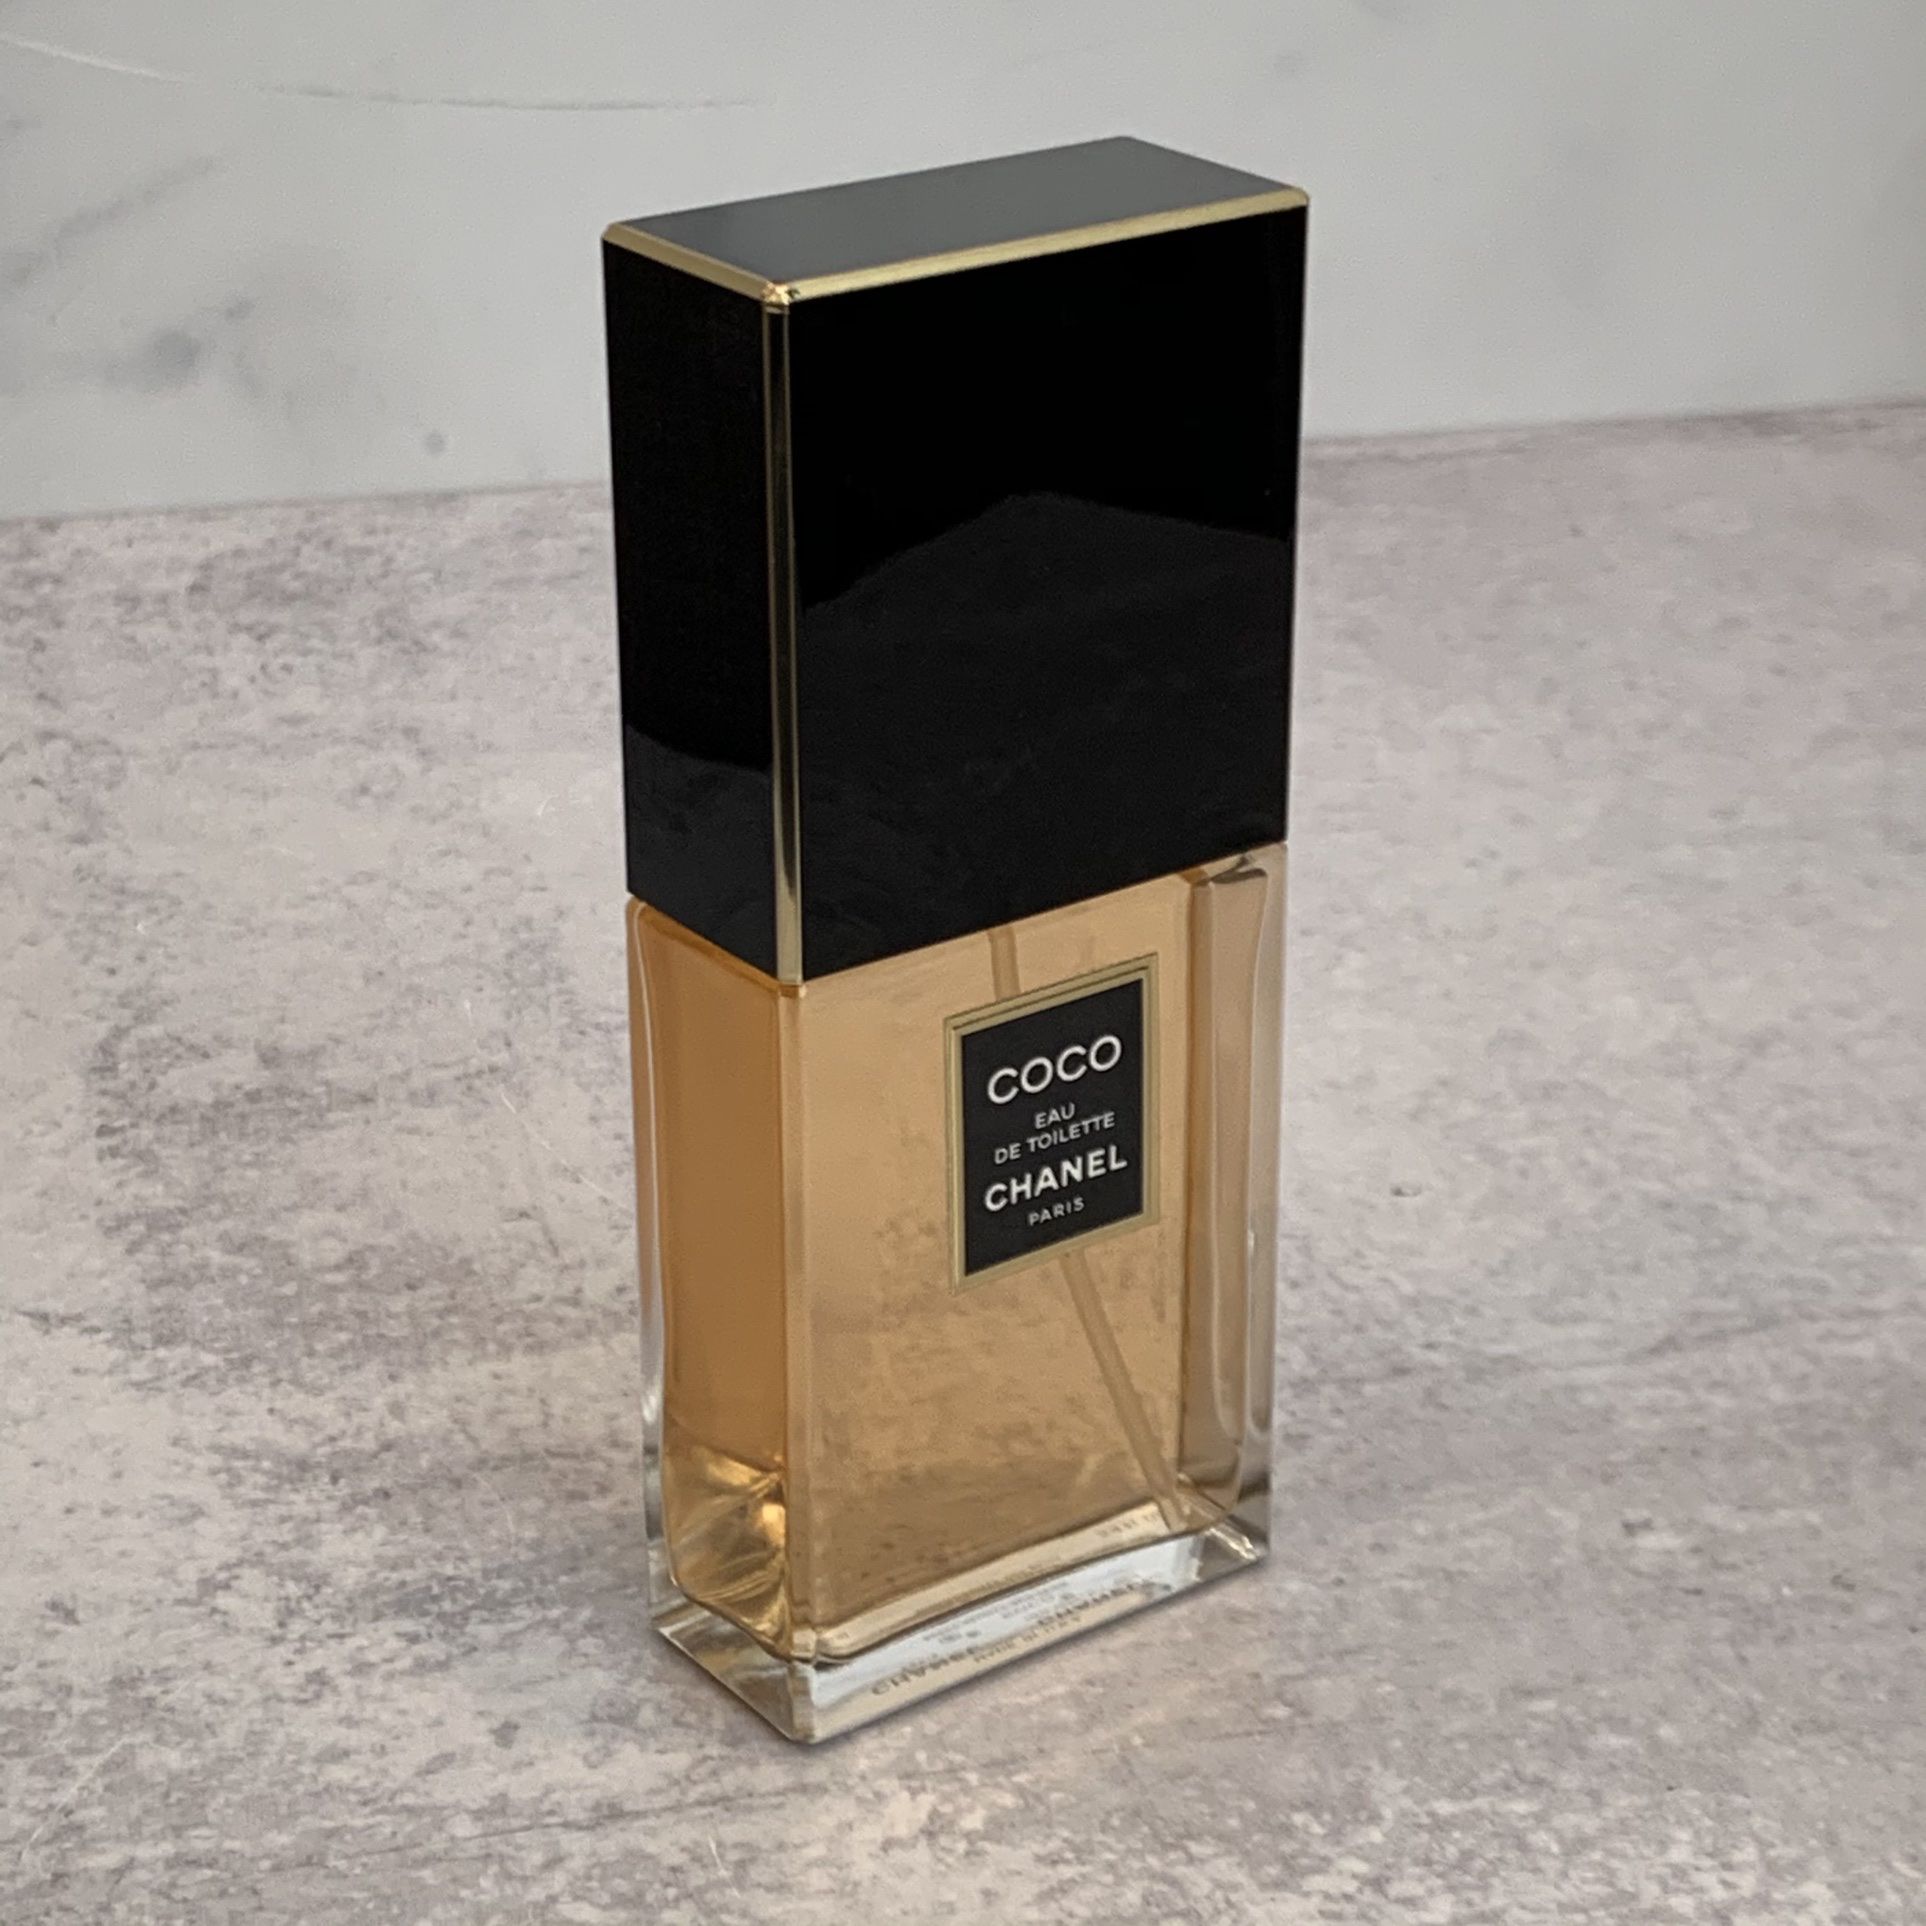 Coco Chanel Eau De Toilette EDT Perfume TSTR 3.4 fl oz (100 ml - large size)